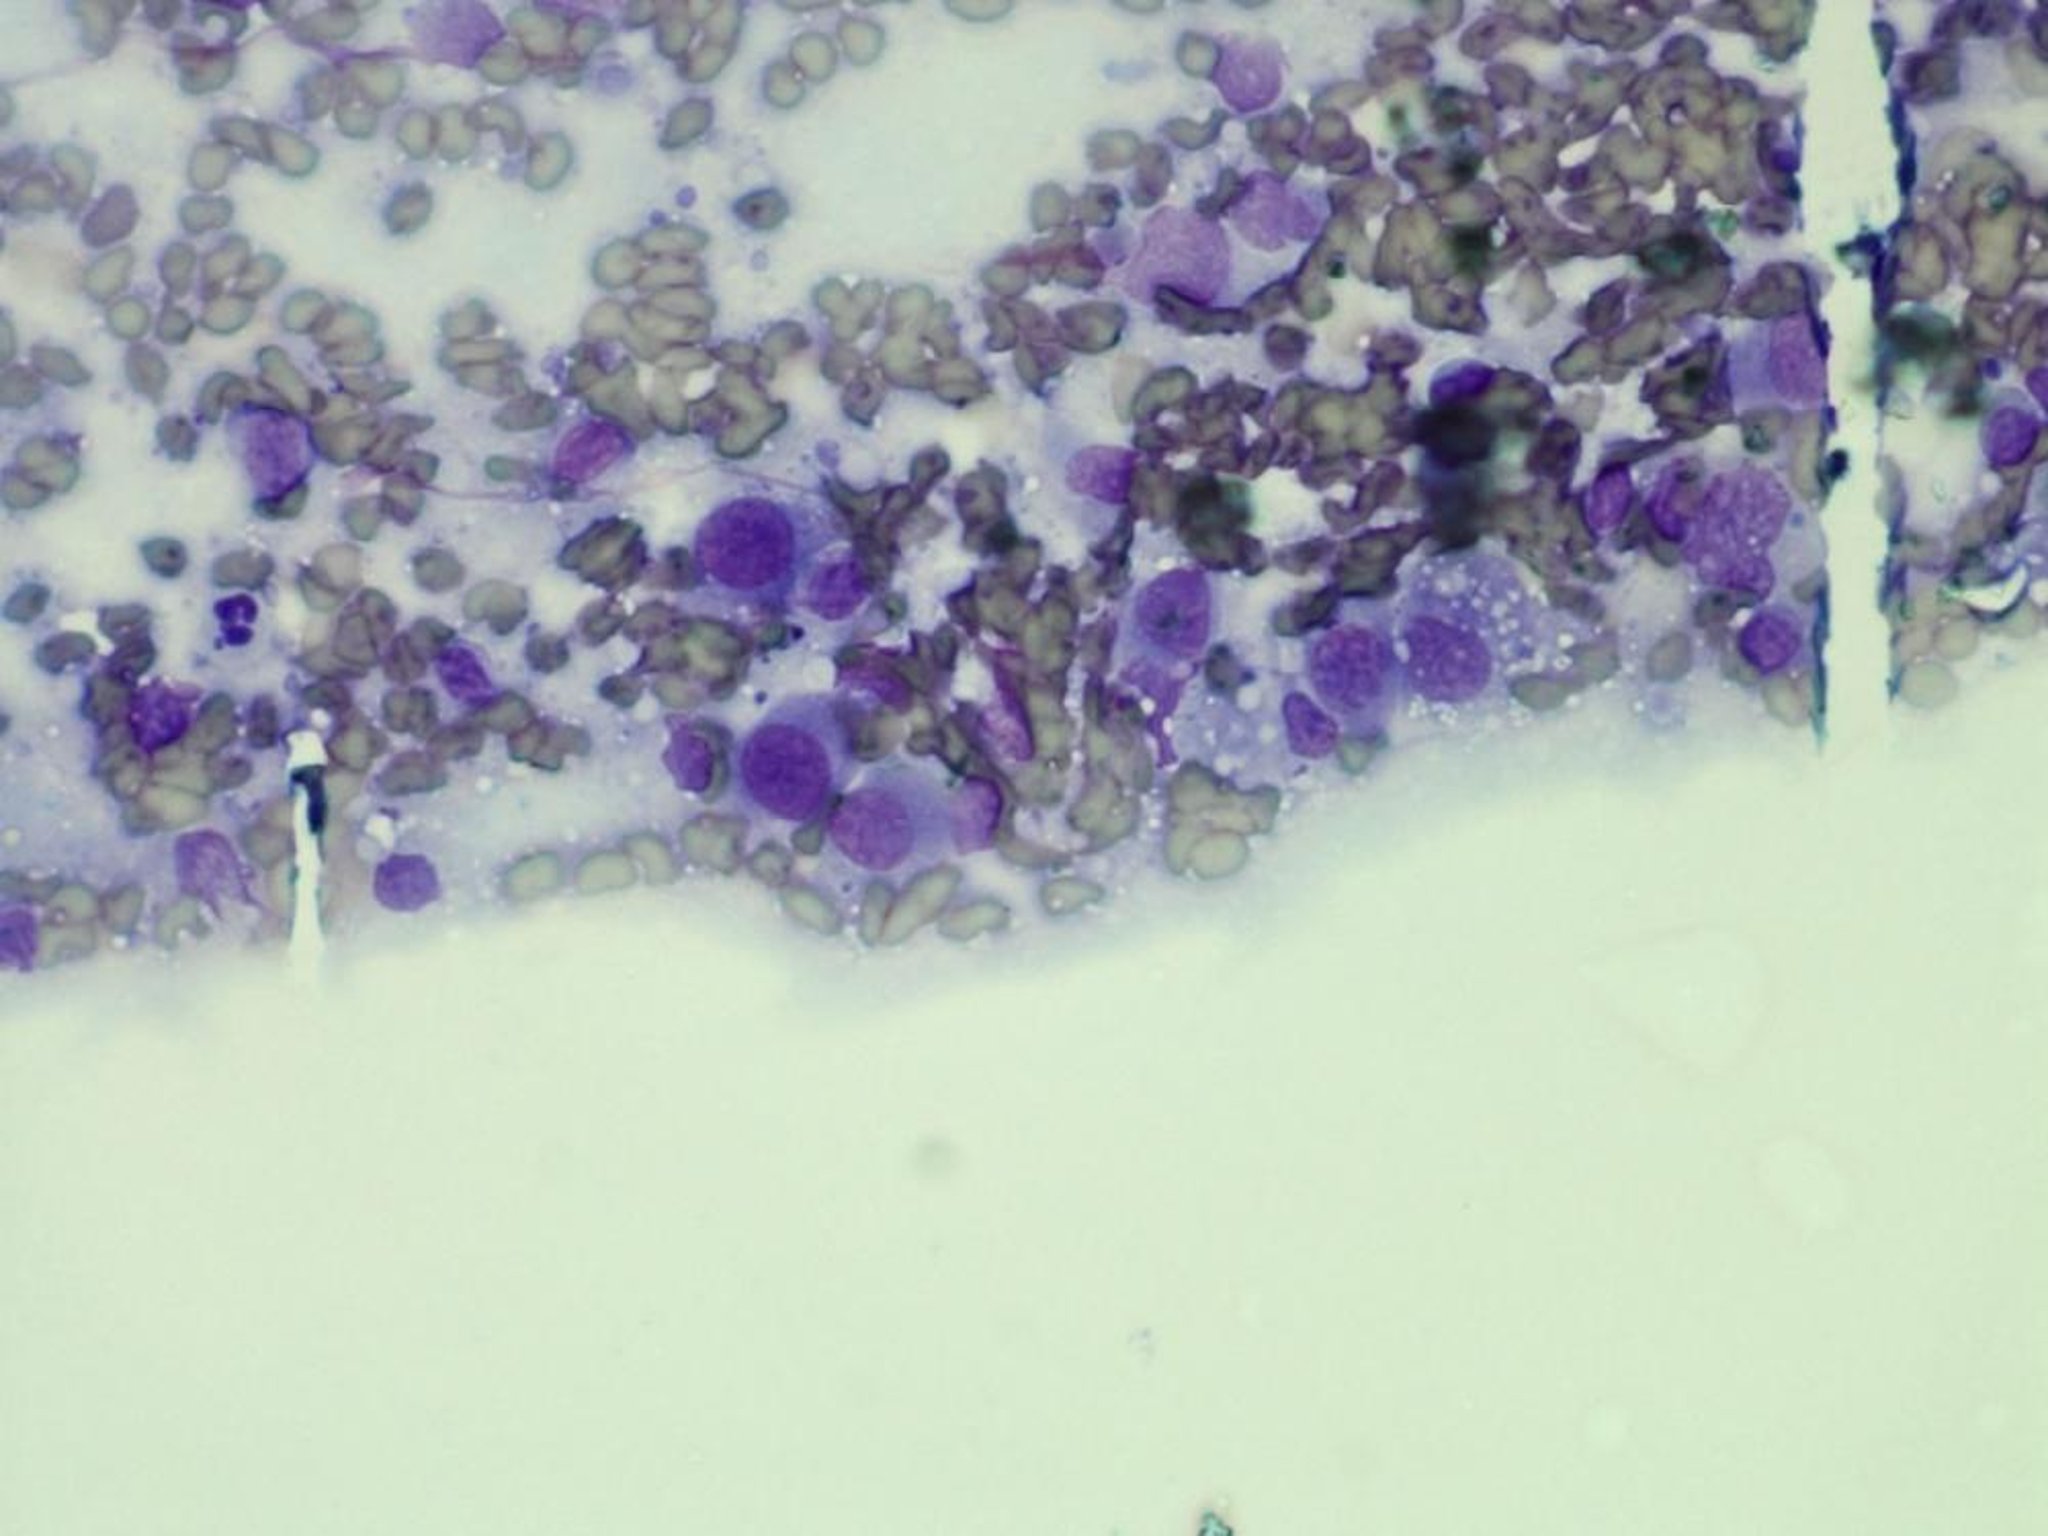 Histiocytoma, cytology